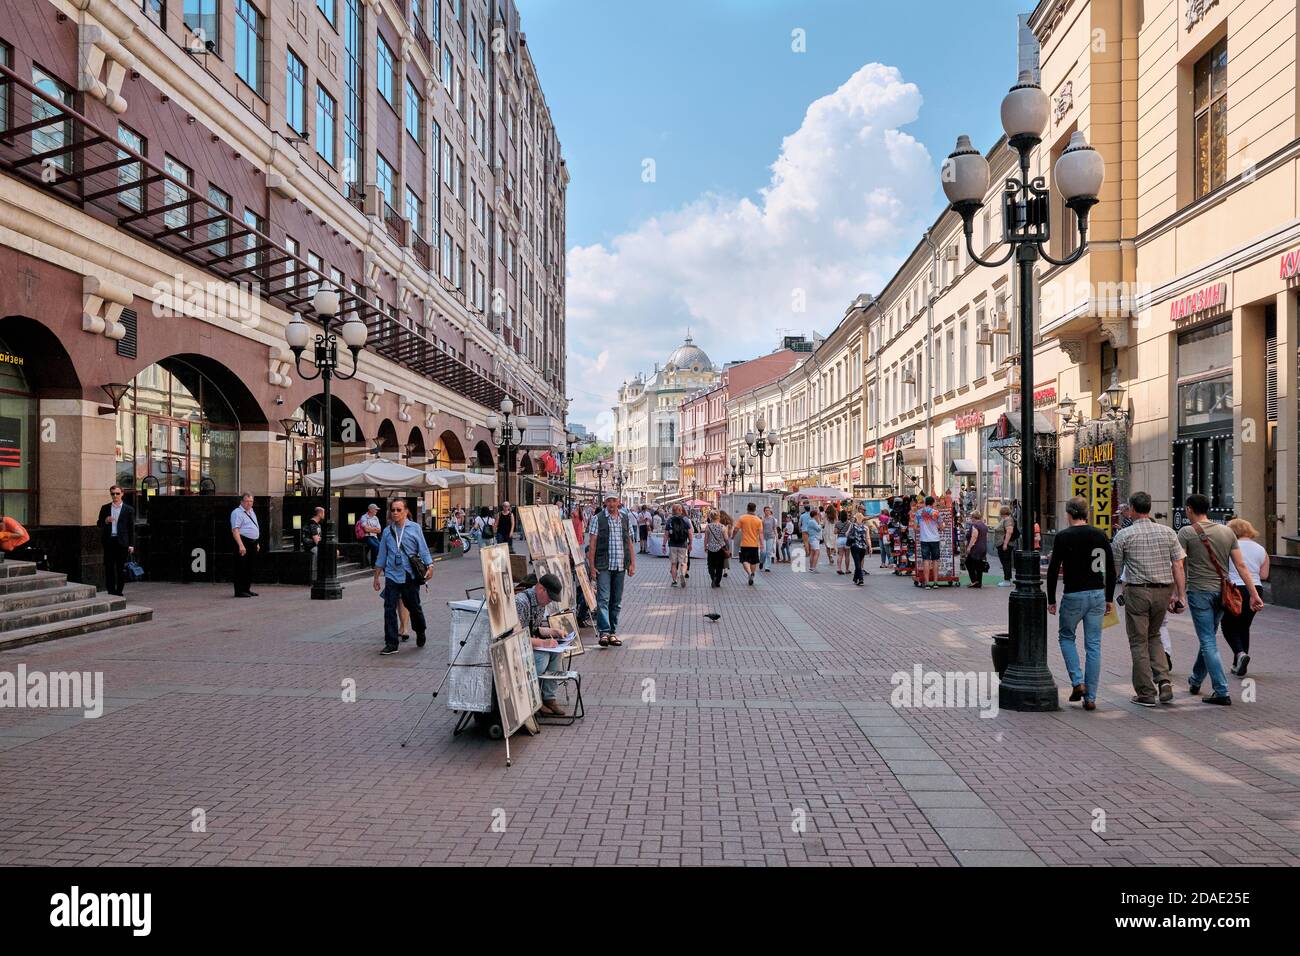 Mosca Russia 06 10 2019: Arbat è una strada nel distretto amministrativo centrale di Mosca (distretto di Arbat). Foto Stock